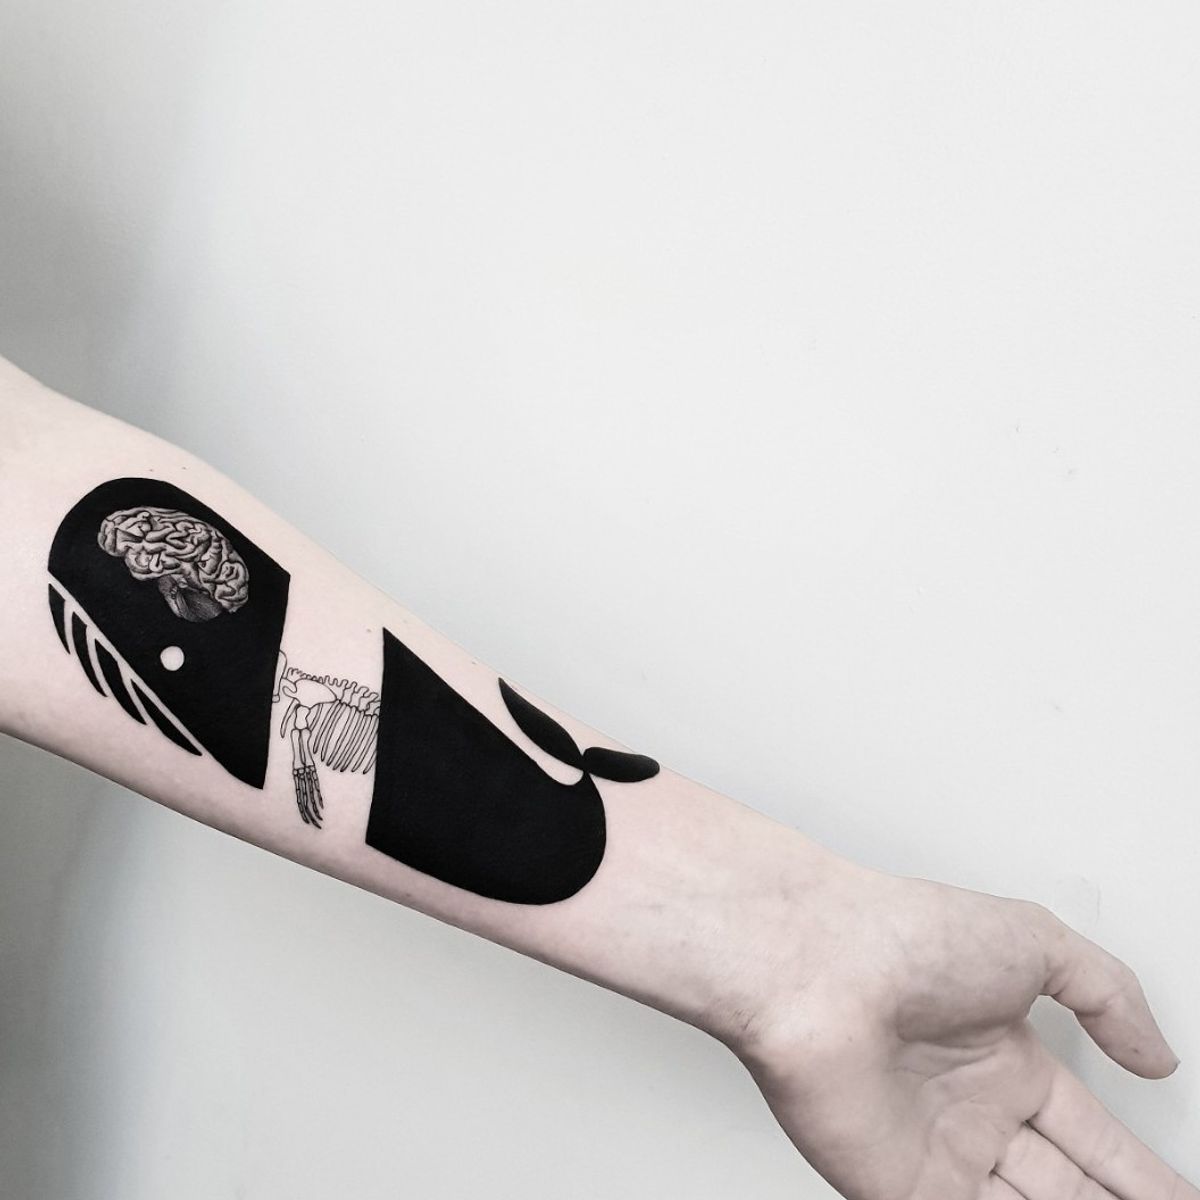 Tattoo uploaded by Matteo Nangeroni • Tattoodo